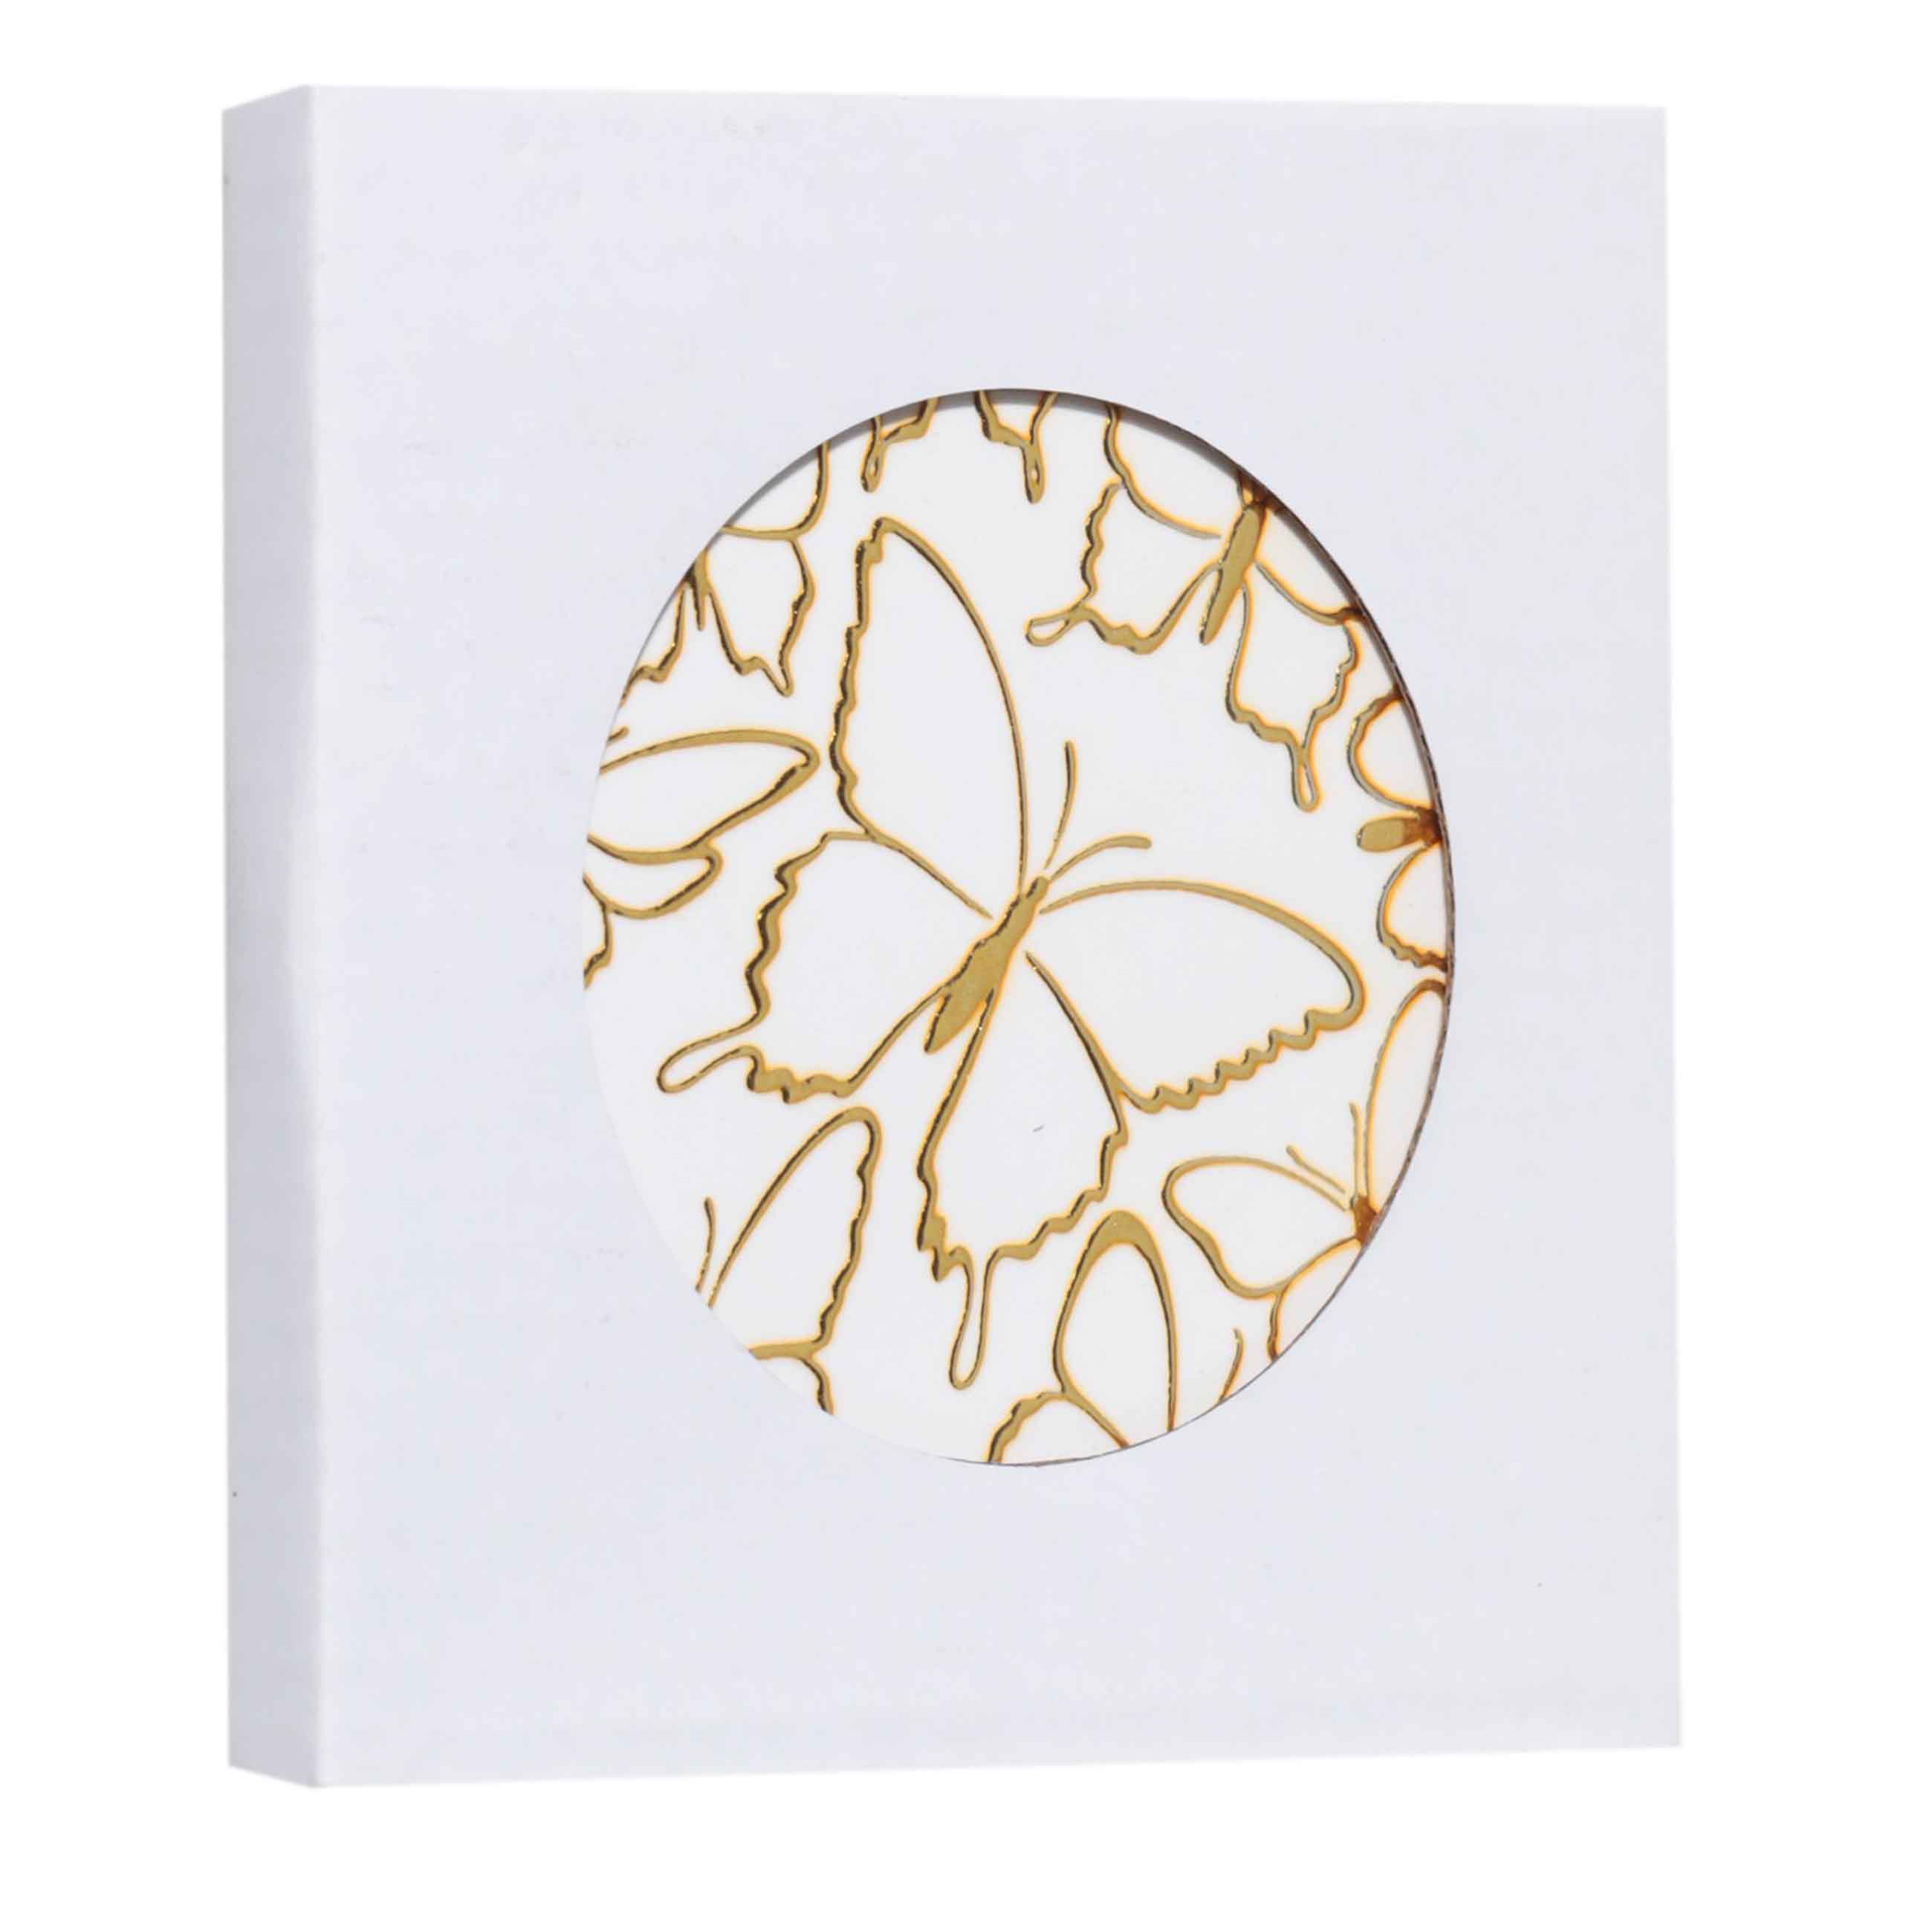 Подставка под кружку, 11 см, керамика/пробка, круглая, белая, Золотистые бабочки, Butterfly изображение № 3